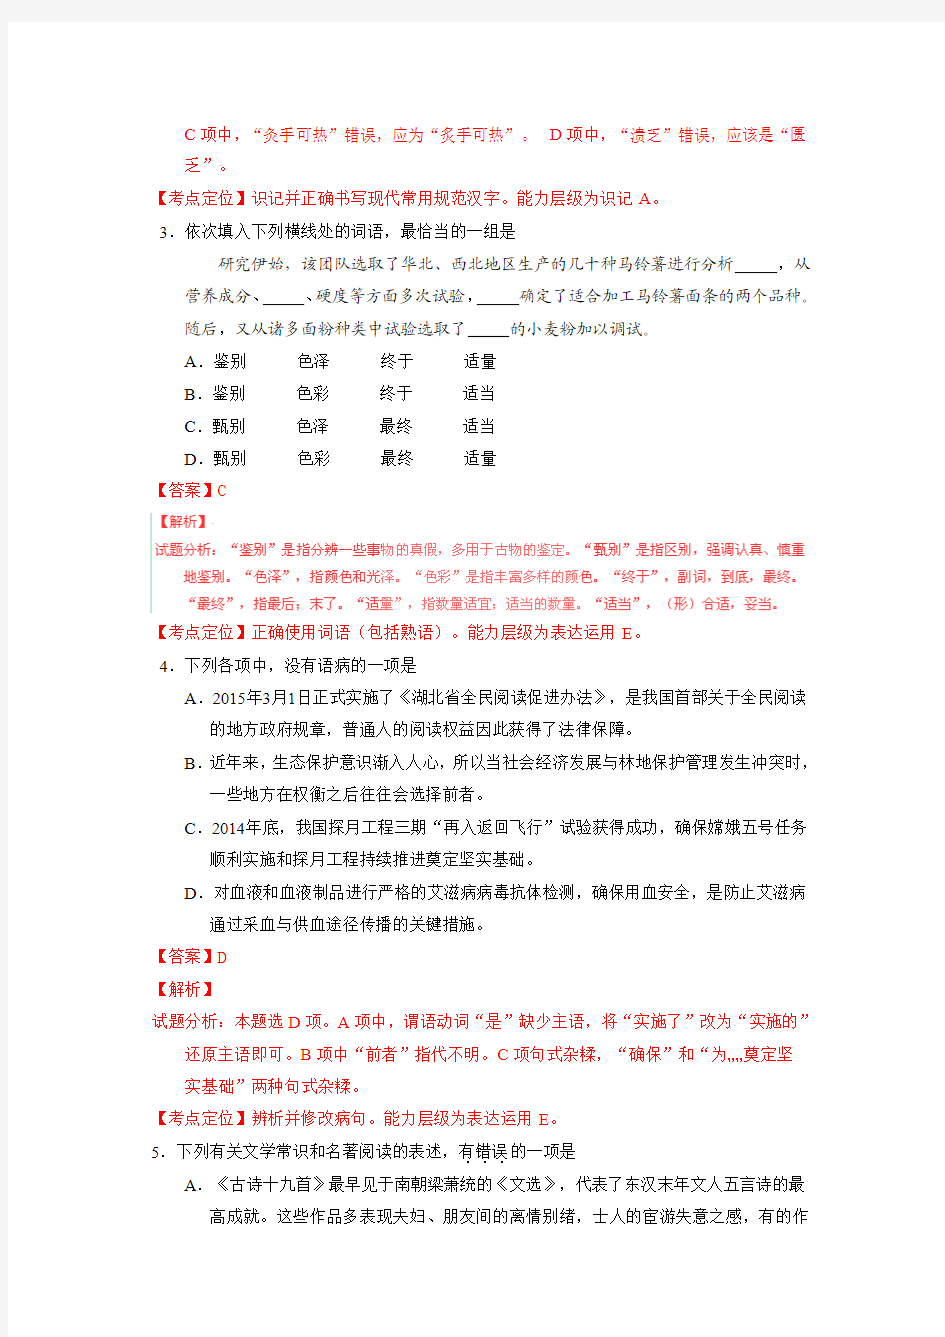 2015高考试题——语文(湖北卷)解析版